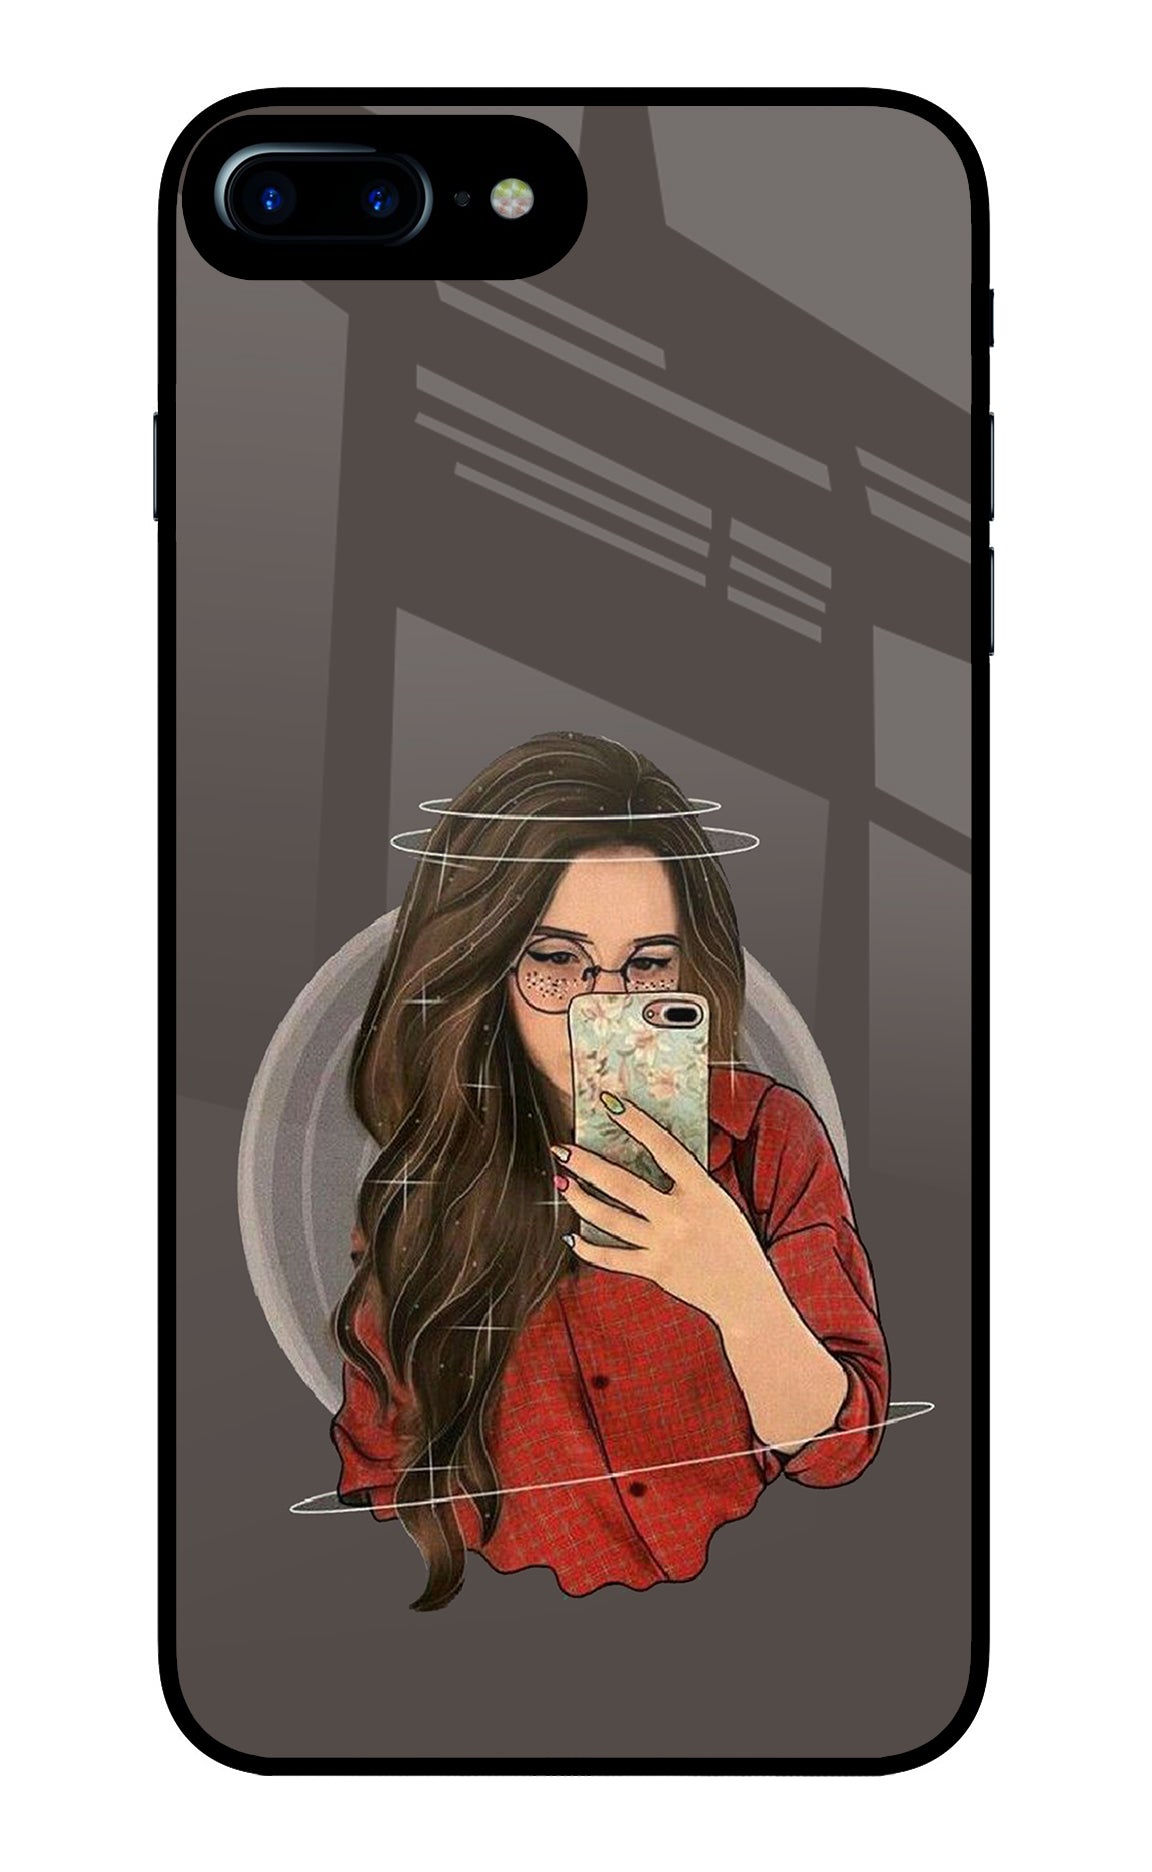 Selfie Queen iPhone 7 Plus Glass Case